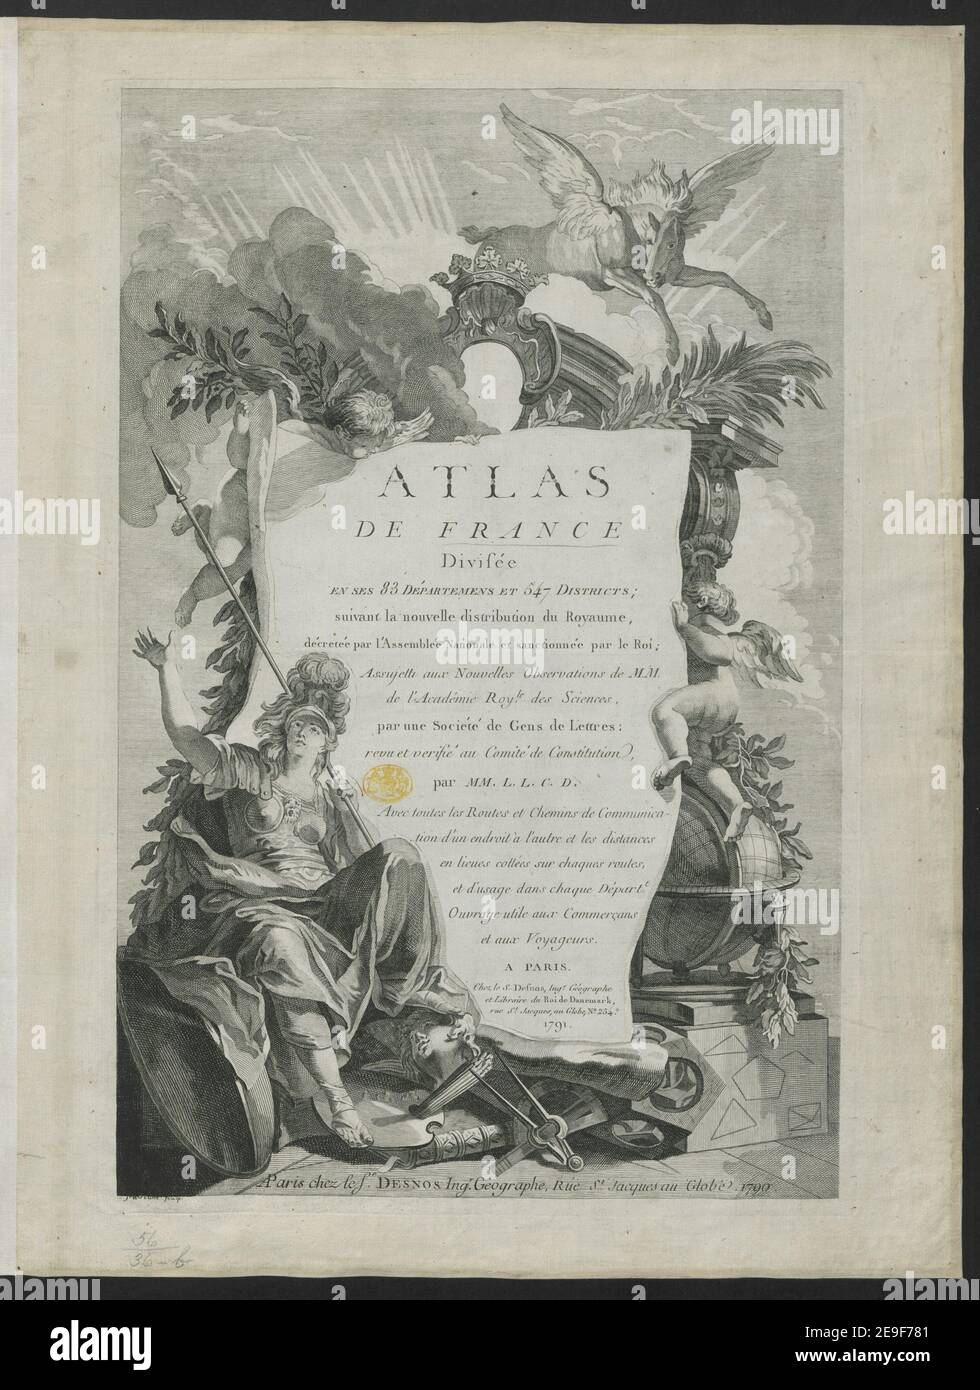 ATLAS DE FRANCE  Book information:  Title: ATLAS DE FRANCE  56.36.b. Place of publication: A PARIS Publisher: Chez le S. Desnos, Ing.r. GeÃÅographe et Libraire du Roi de Danemark, rue St. Jacques, au Globe, No. 254, Date of publication: 1791.  Item type: 1 print Medium: engraving Dimensions: platemark 50 x 33.6 cm, on sheet 55.1 x 42.6 cm  Former owner: George III, King of Great Britain, 1738-1820 Stock Photo